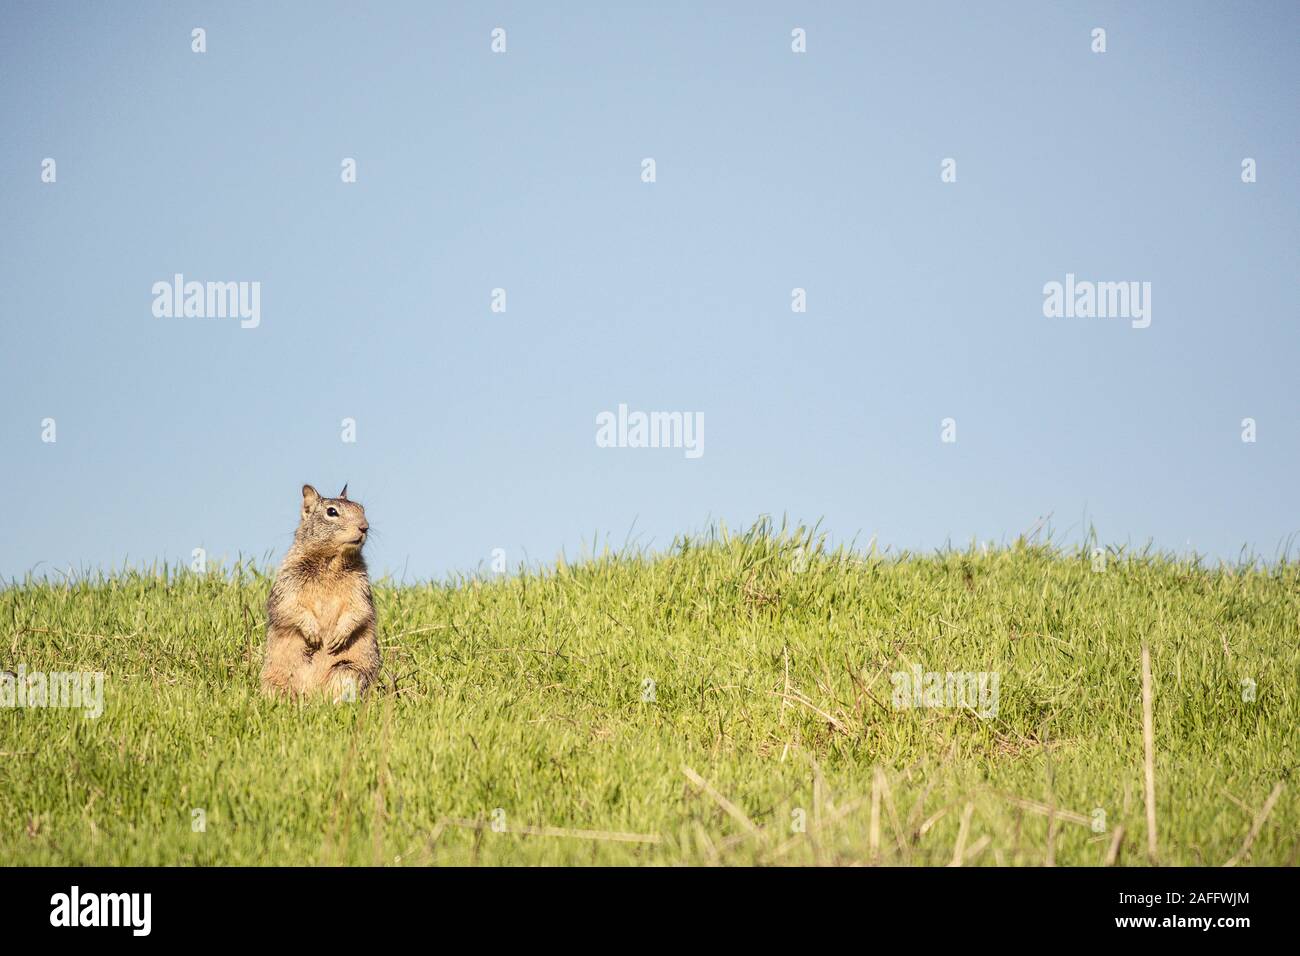 La massa della California lo scoiattolo seduto sulle zampe posteriori con zampe anteriori sollevate guardando al lato. Cielo blu e verde erba. Foto Stock